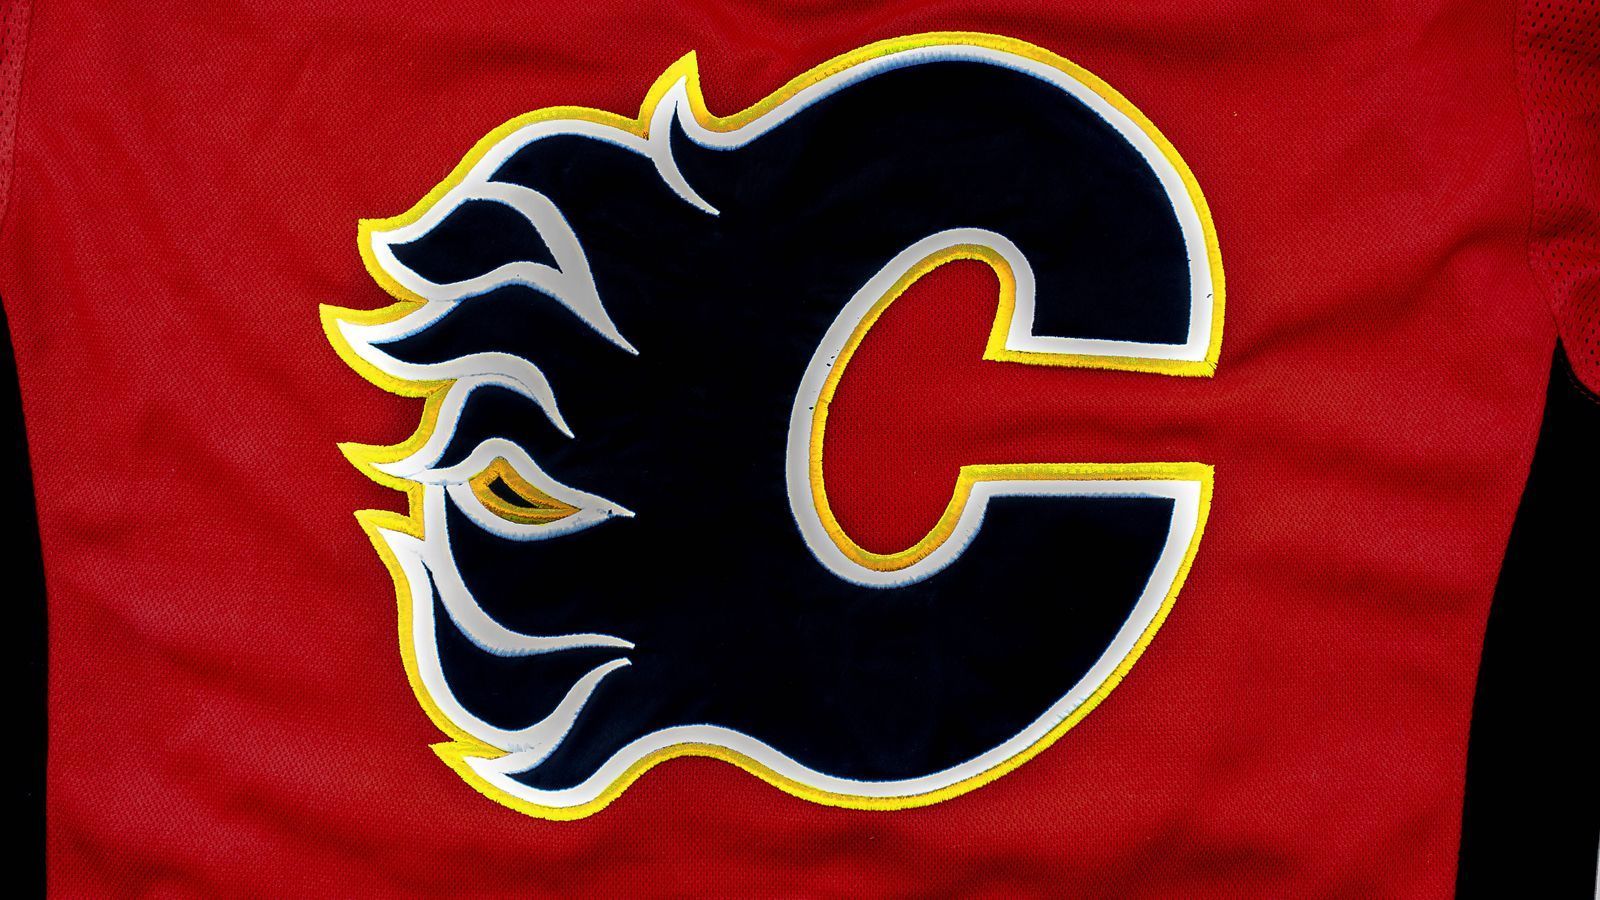 
                <strong>Calgary Flames</strong><br>
                Der Name stammt von den Atlanta Flames, die 1972 der NHL beitraten und 1980 nach Kanada umgezogen sind. Flames war eine Anspielung auf William T. Sherman. Dieser kämpfte auf Seiten der Nordstaaten im Sezessionskrieg. Sherman wurde bekannt durch die Einnahme Atlantas und dem daran anschließenden Marsch nach Savannah, Georgia. Flames erinnert daran, dass Atlanta damals niedergebrannt wurde. Trotz des Umzugs nach Calgary im Jahre 1980 wurde der Name beibehalten, weil Flammen gut zu einer Öl-Stadt wie Calgary passen. Das Logo wurde allerdings von einem brennenden A zu einem brennenden C abgeändert.
              